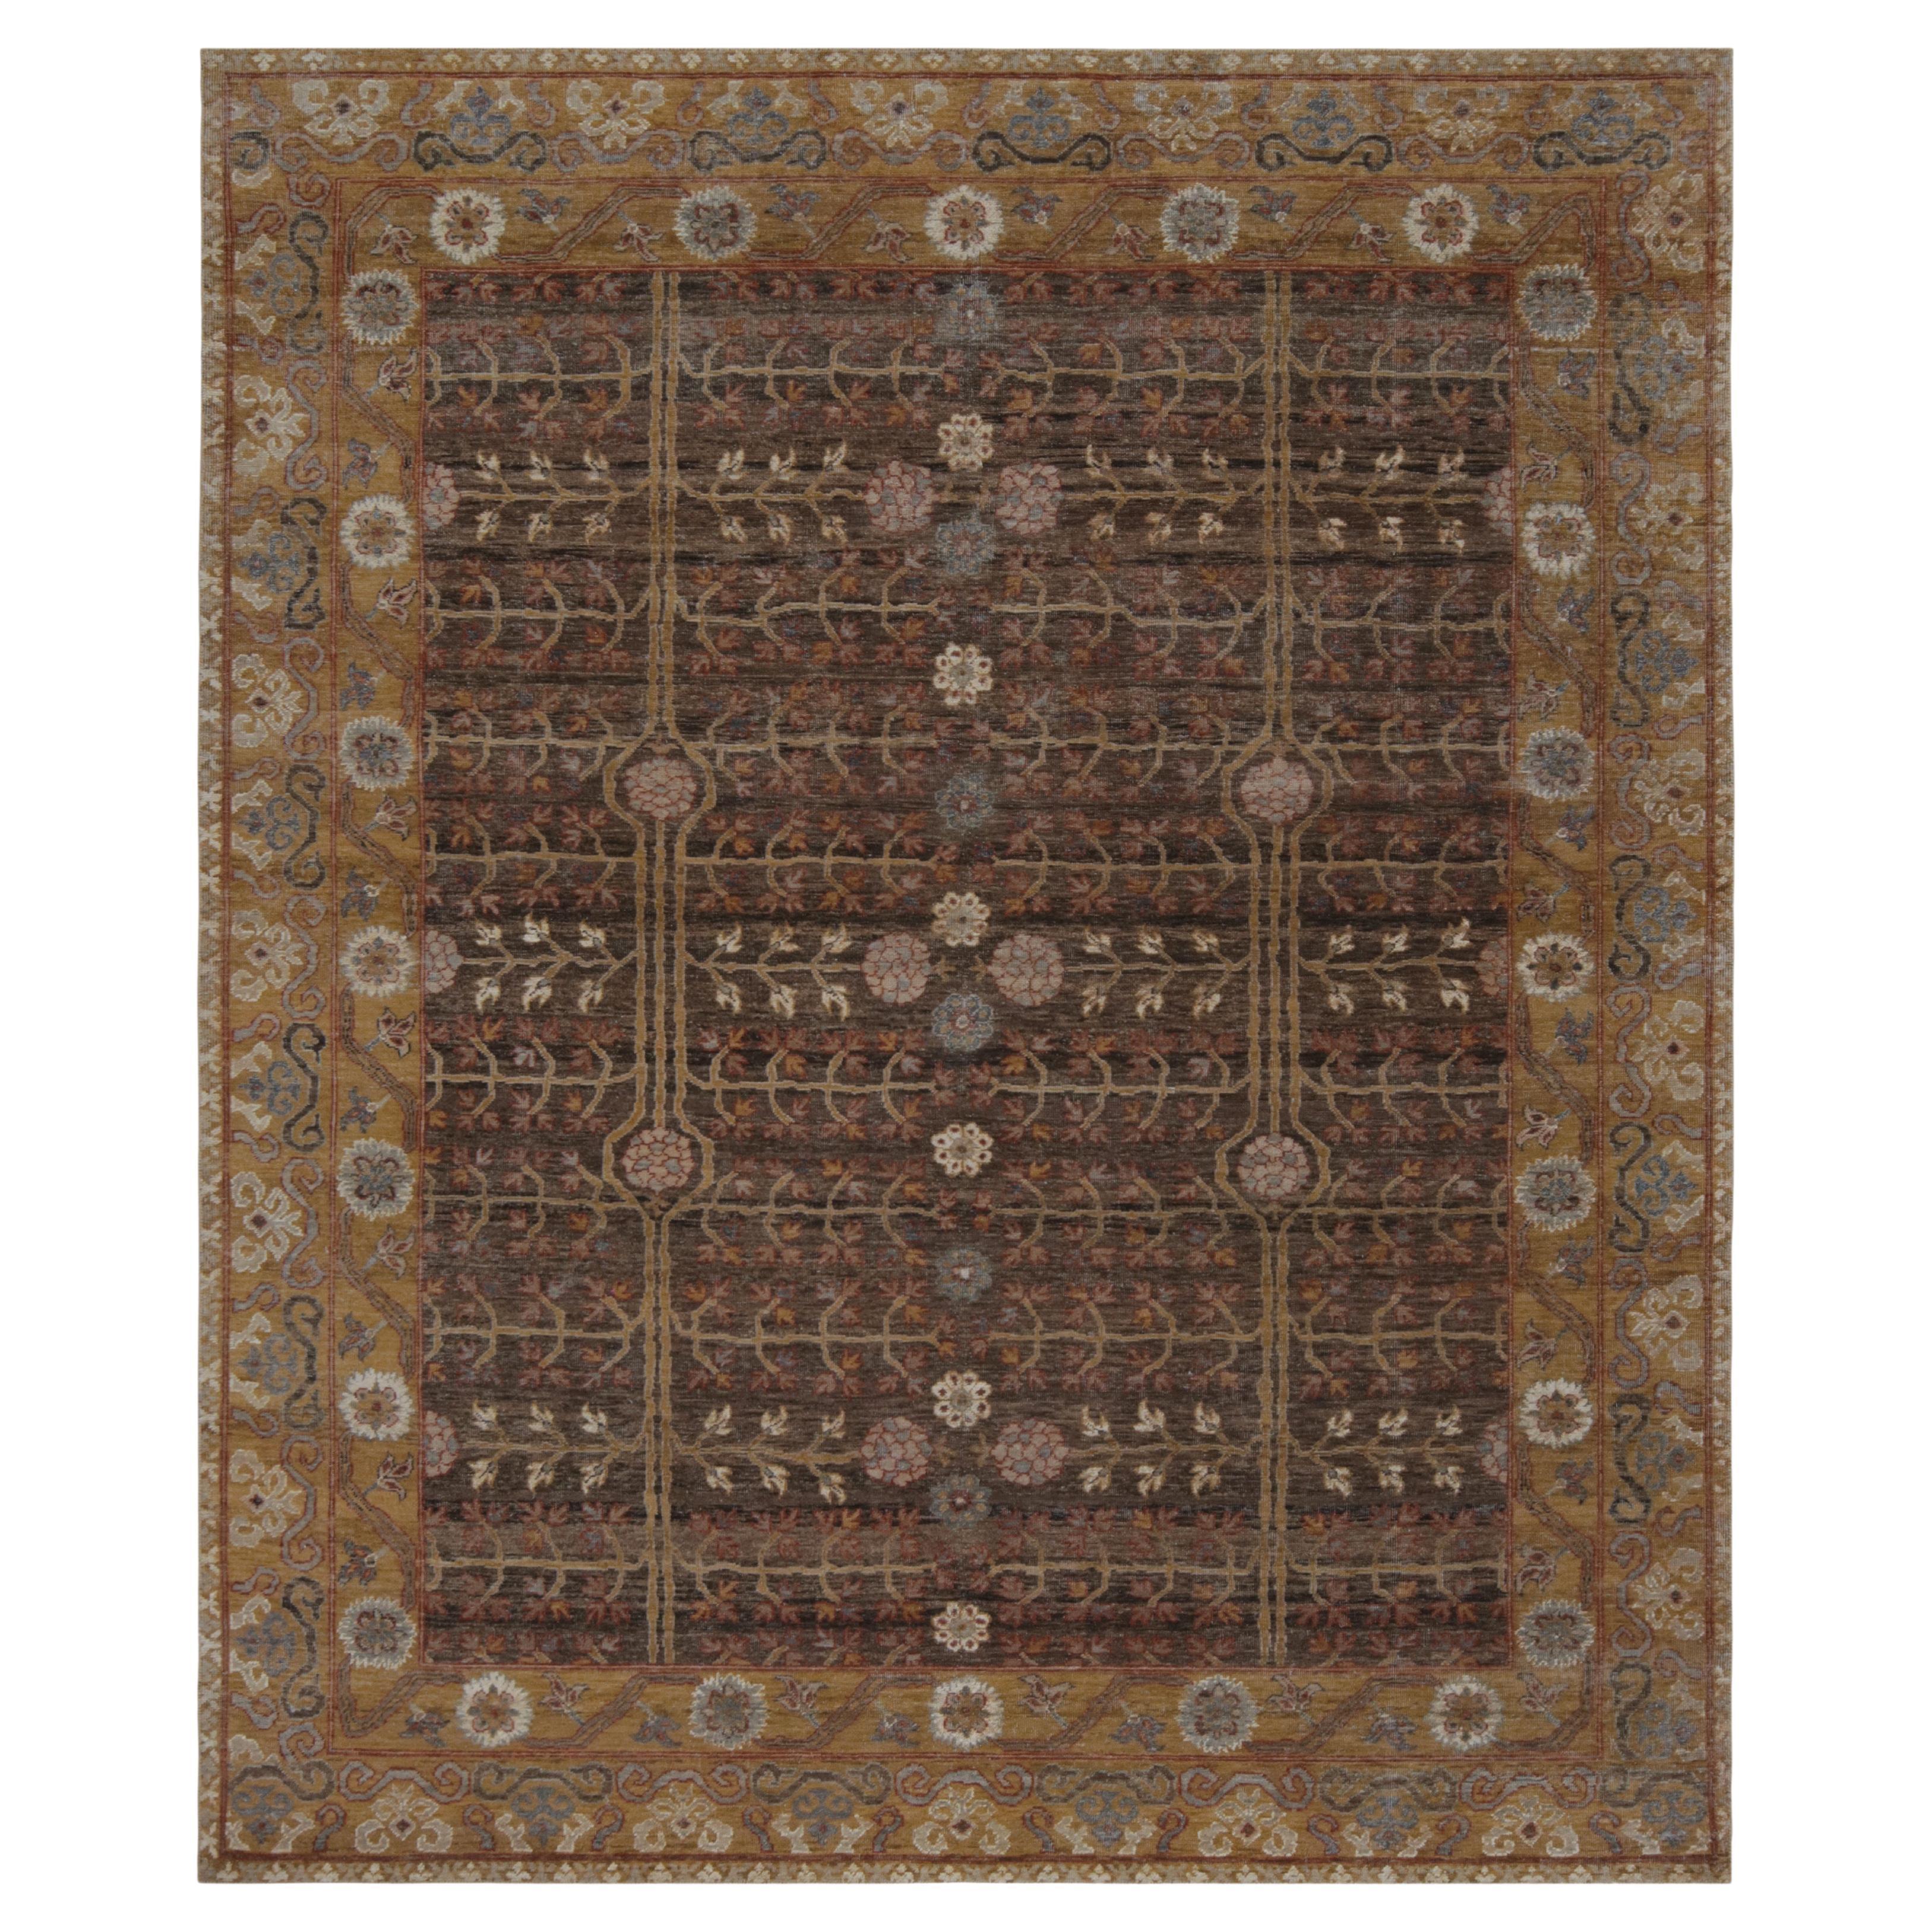 Khotan-Teppich von Rug & Kilim in Braun und Gold mit geometrischen Mustern